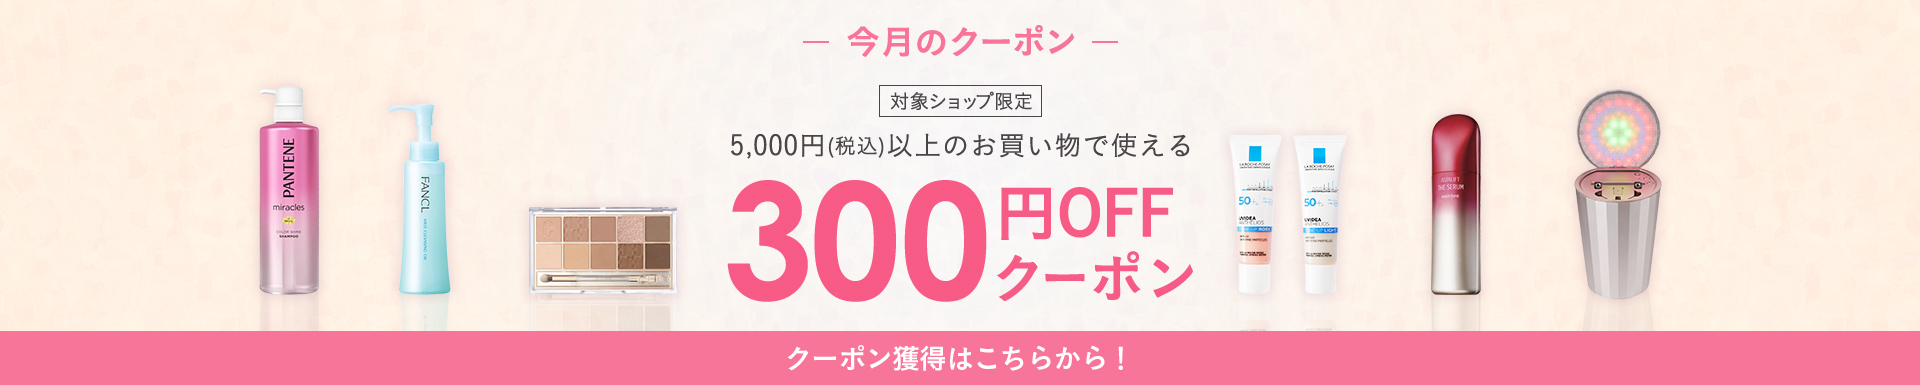 5,000円(税込)以上のお買い物で使える300円OFFクーポン